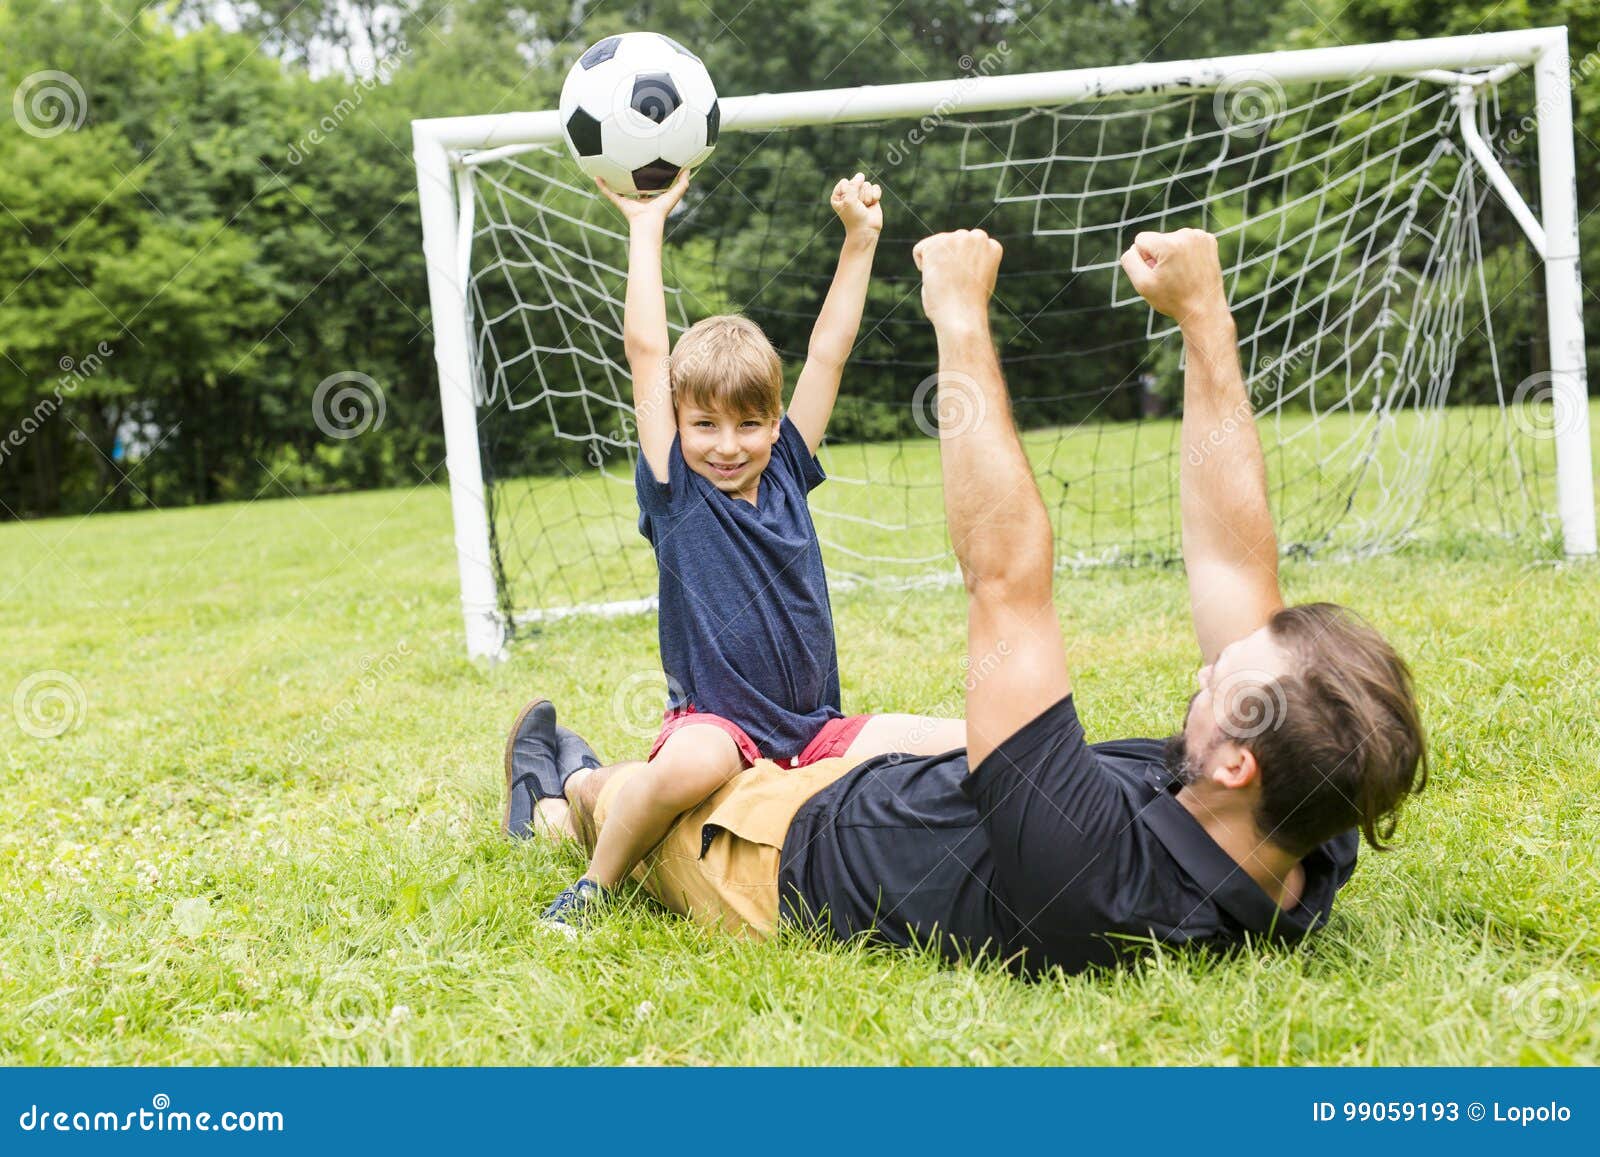 Папы играют в футбол. Футбол с папой. Мальчик с папой играет в футбол. Папа и сын футбол. Семья на футбольном поле.